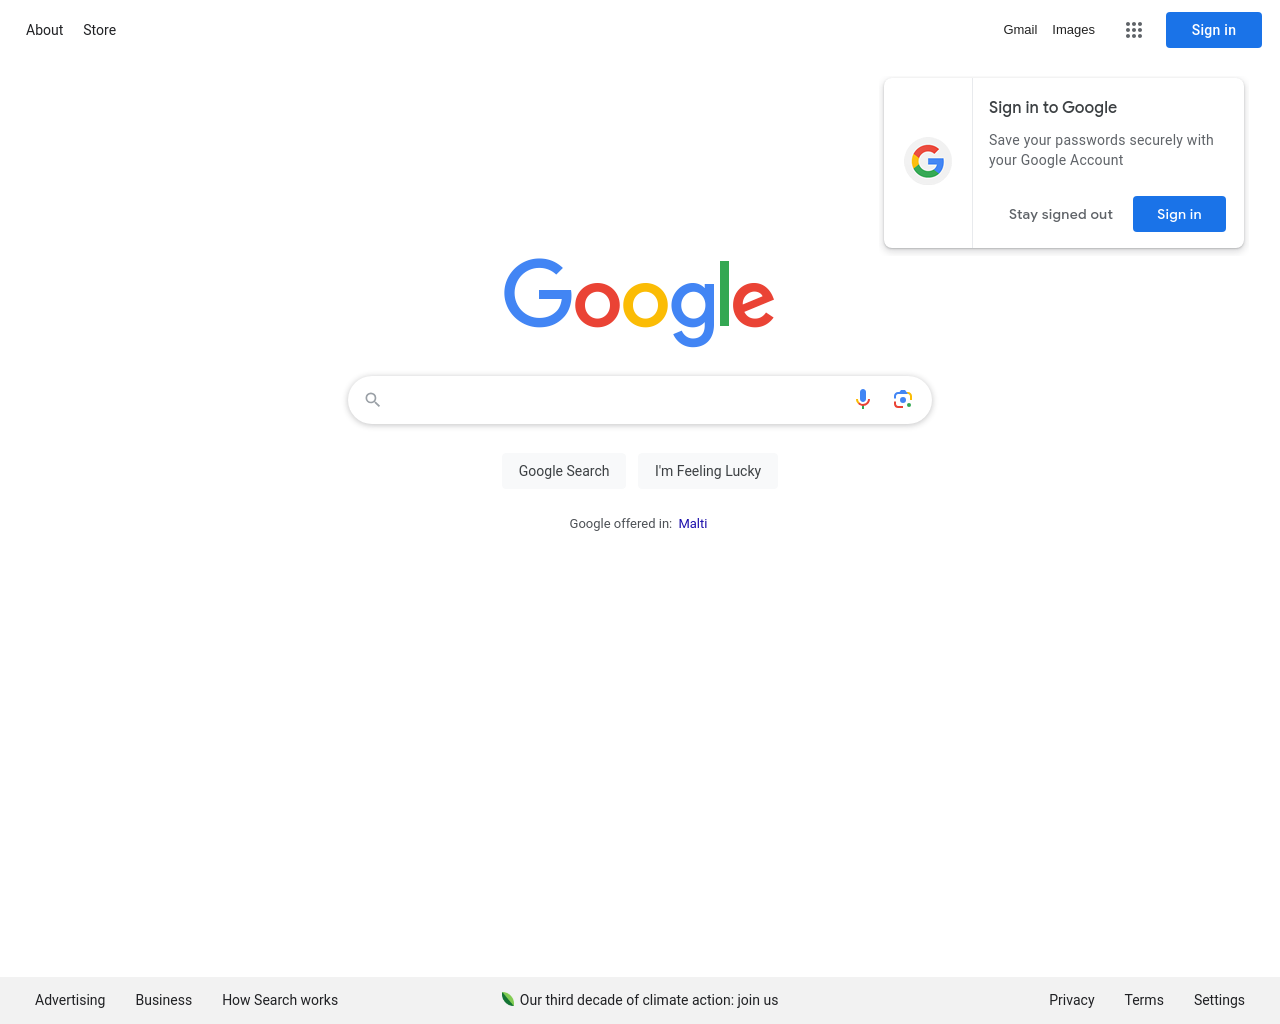 google.com.mt